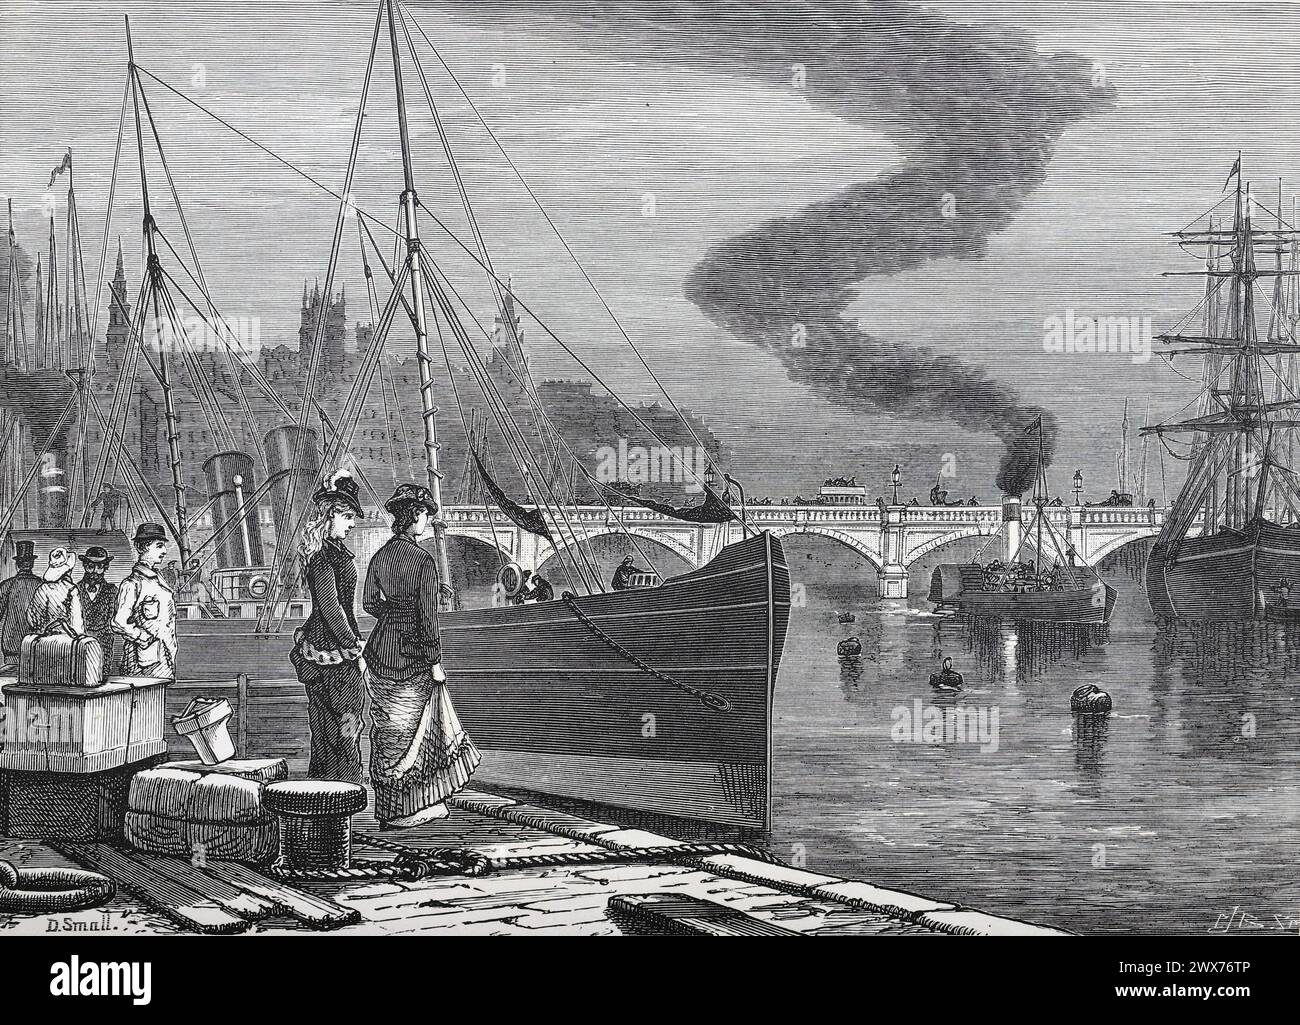 Vue de la rivière Clyde à Glasgow au 19ème siècle ; illustration en noir et blanc de « notre propre pays » publiée par Cassell, Petter, Galpin & Co. Fin du XIXe siècle. Banque D'Images